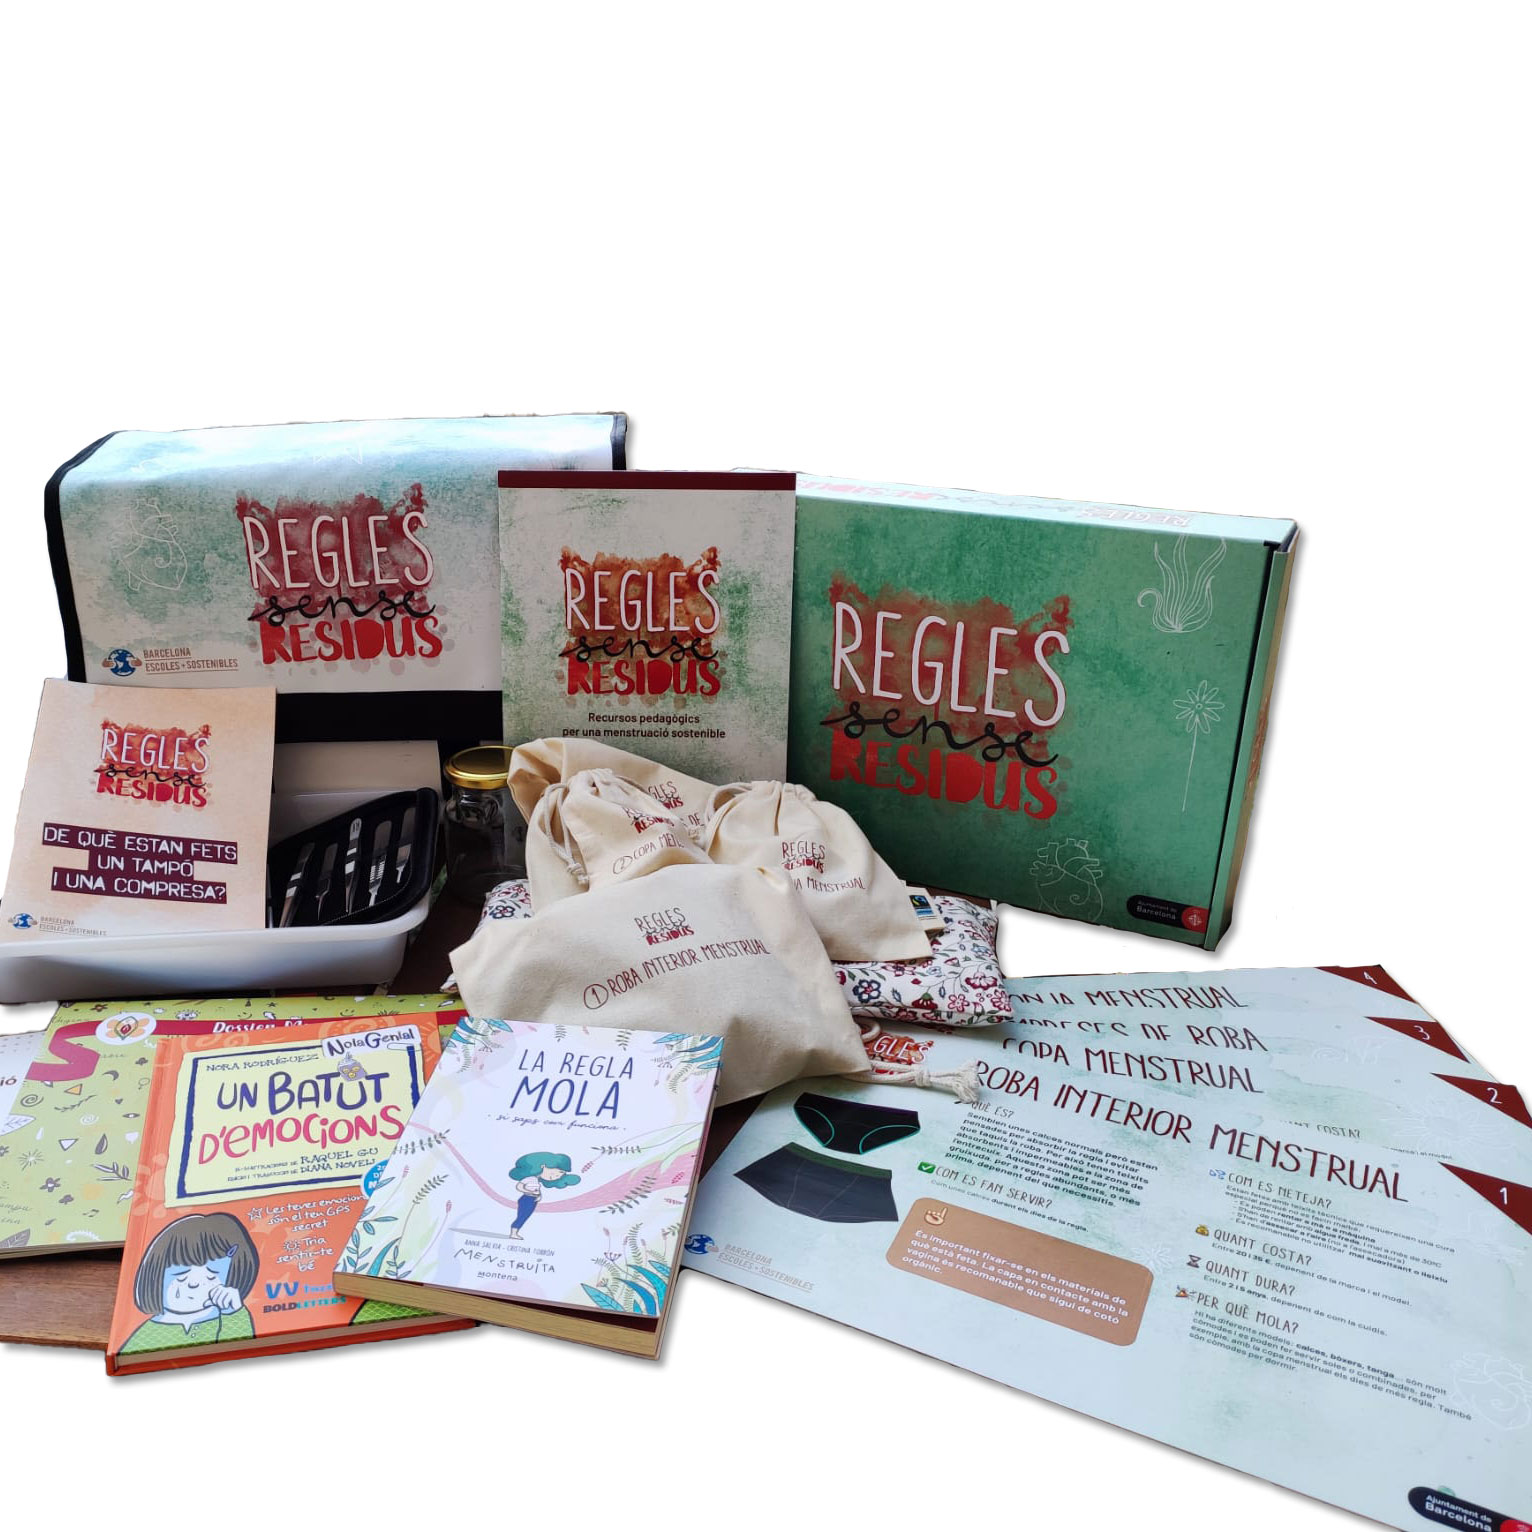 Disseny de la imatge gràfica, caixa, dossier, fitxes, bosses de productes, per donar recursos pedagògics per a una menstruació sostenible.